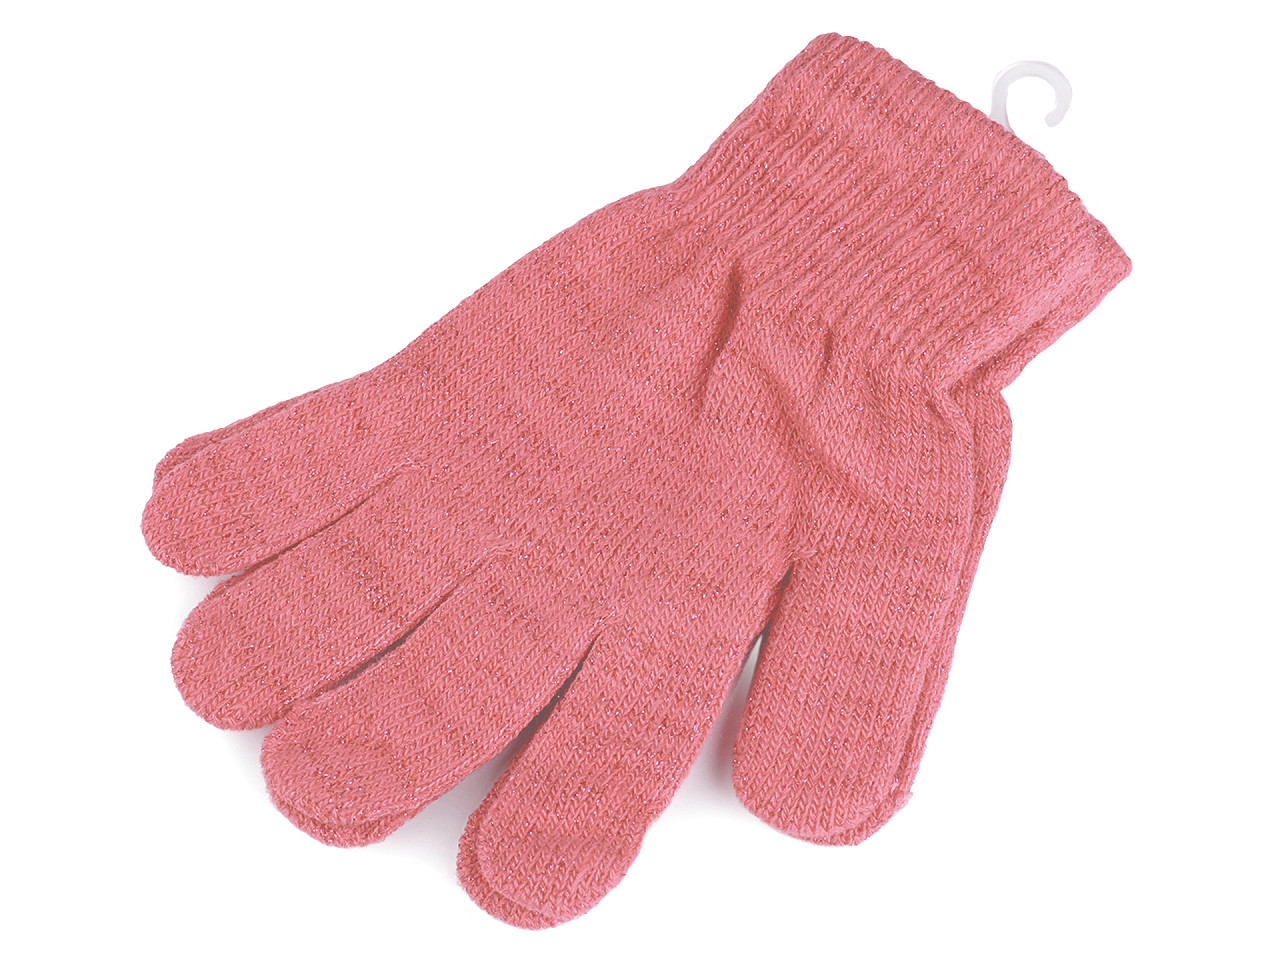 Gestrickte Damen-/Mädchenhandschuhe mit Lurex, rosa, 1 Paar